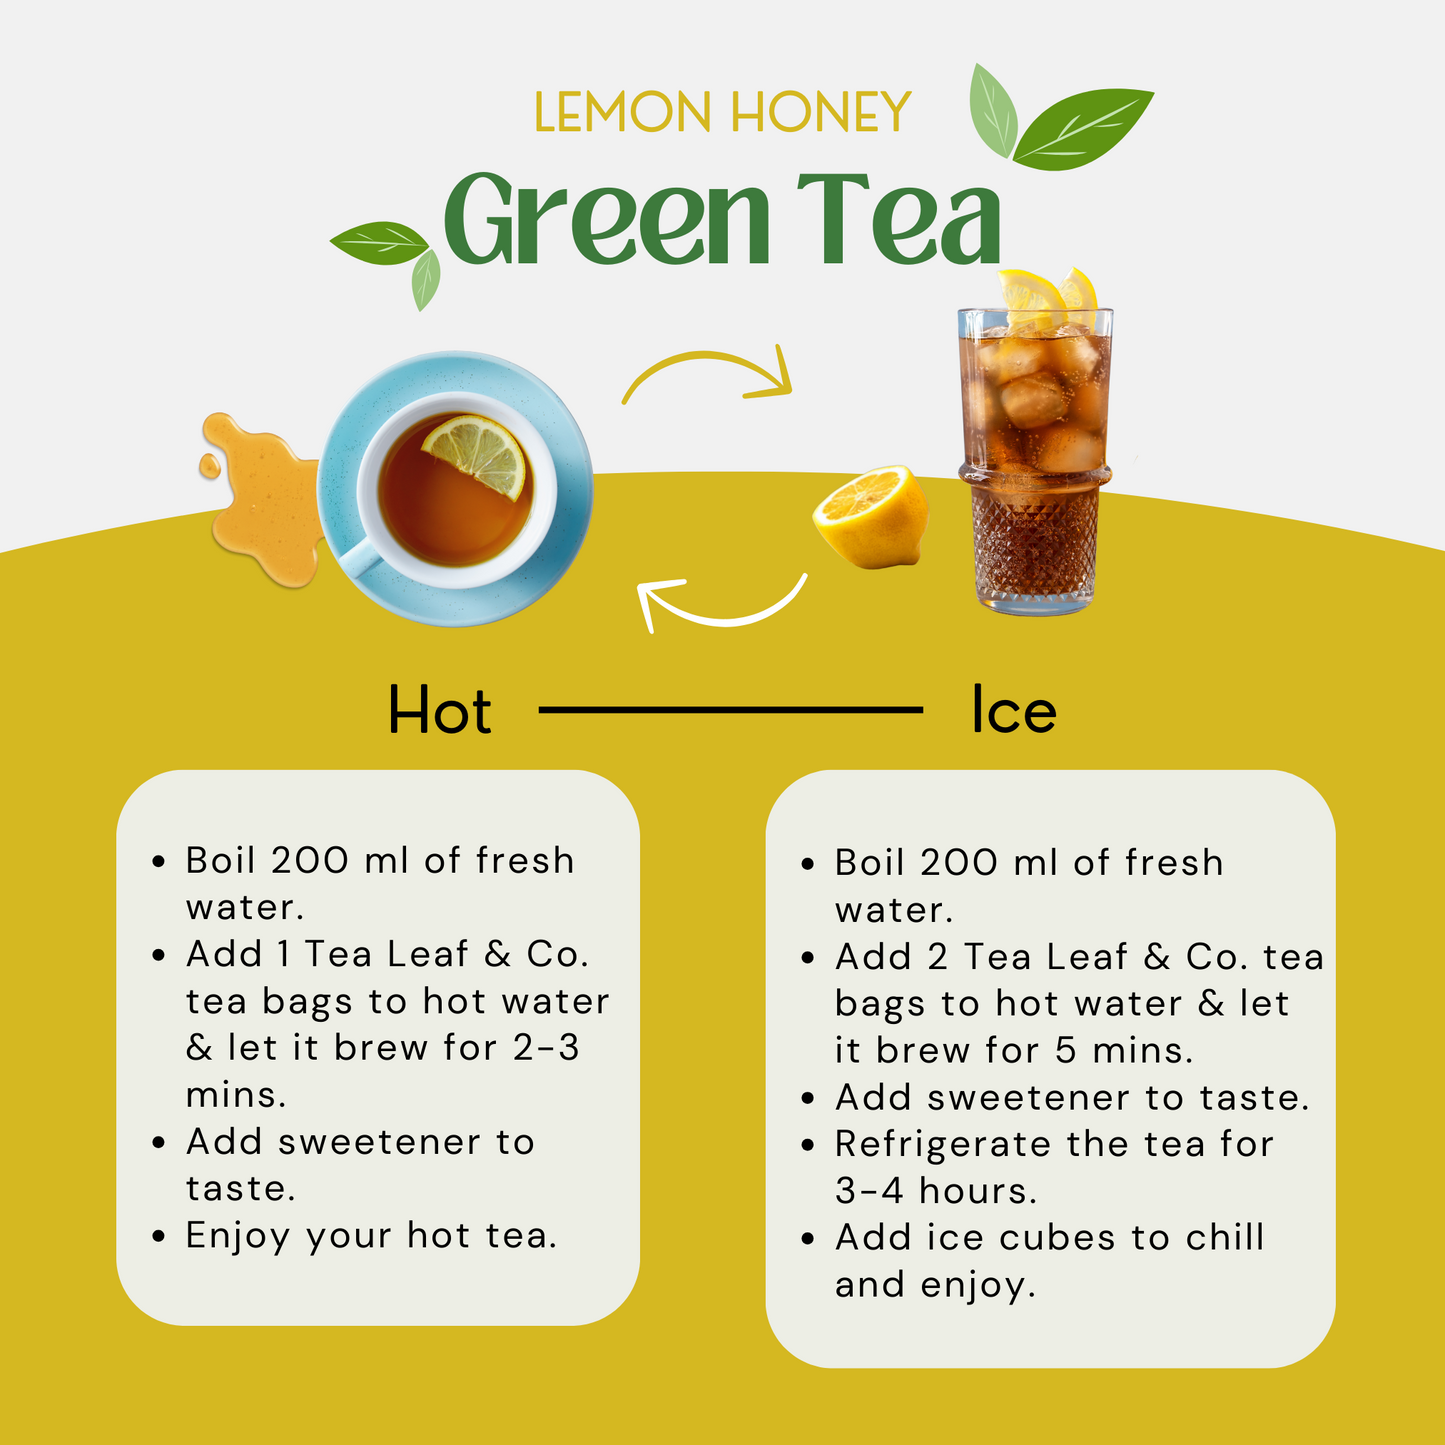 Honey Lemon Green Tea - 25 Tea Bags